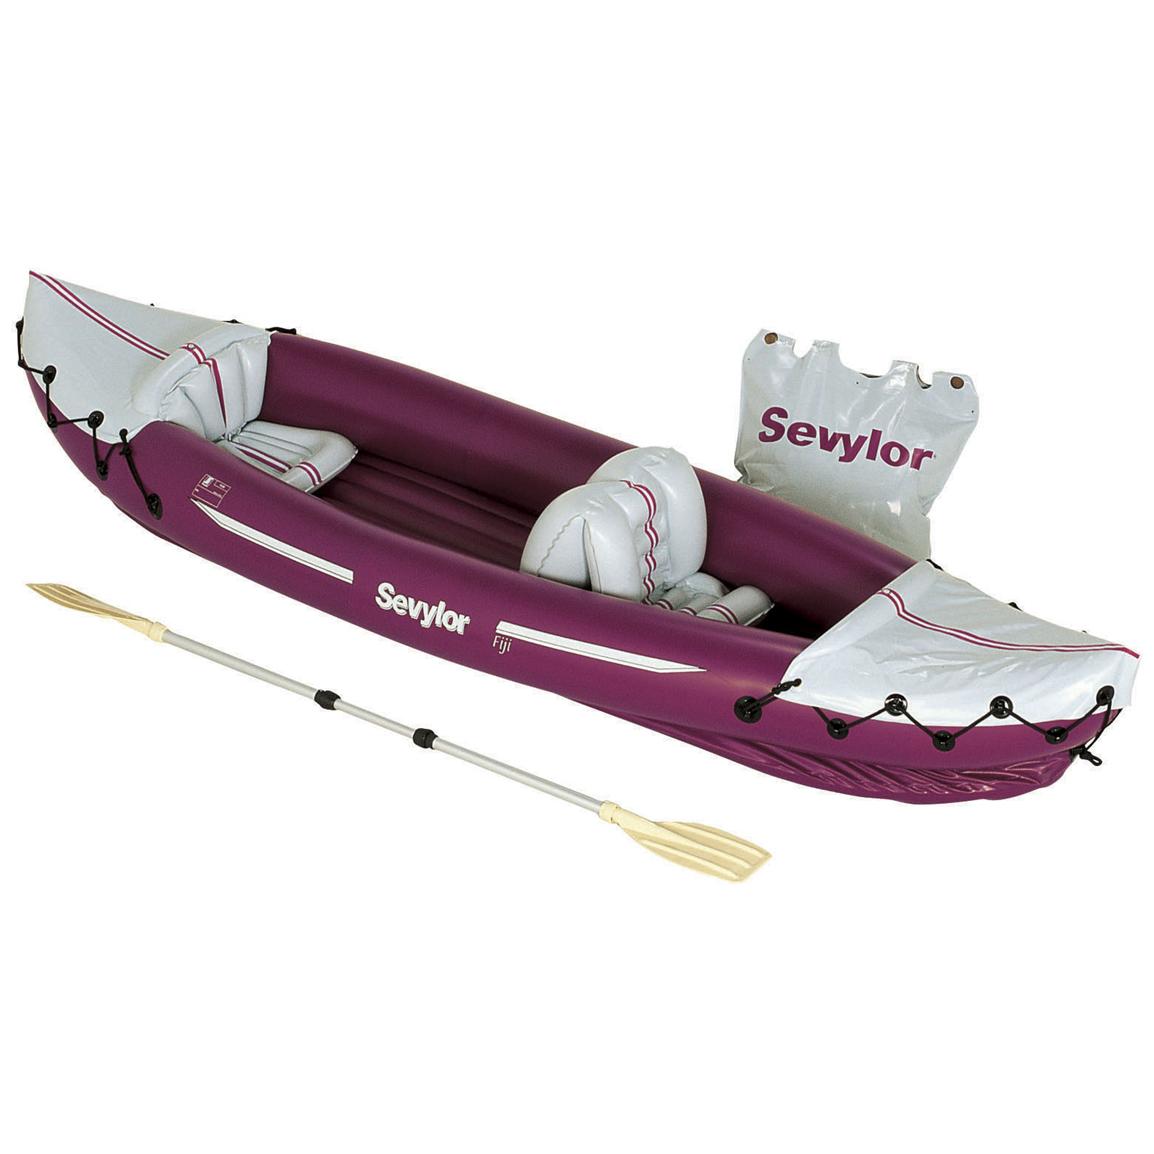 sevylor fiji travel kayak